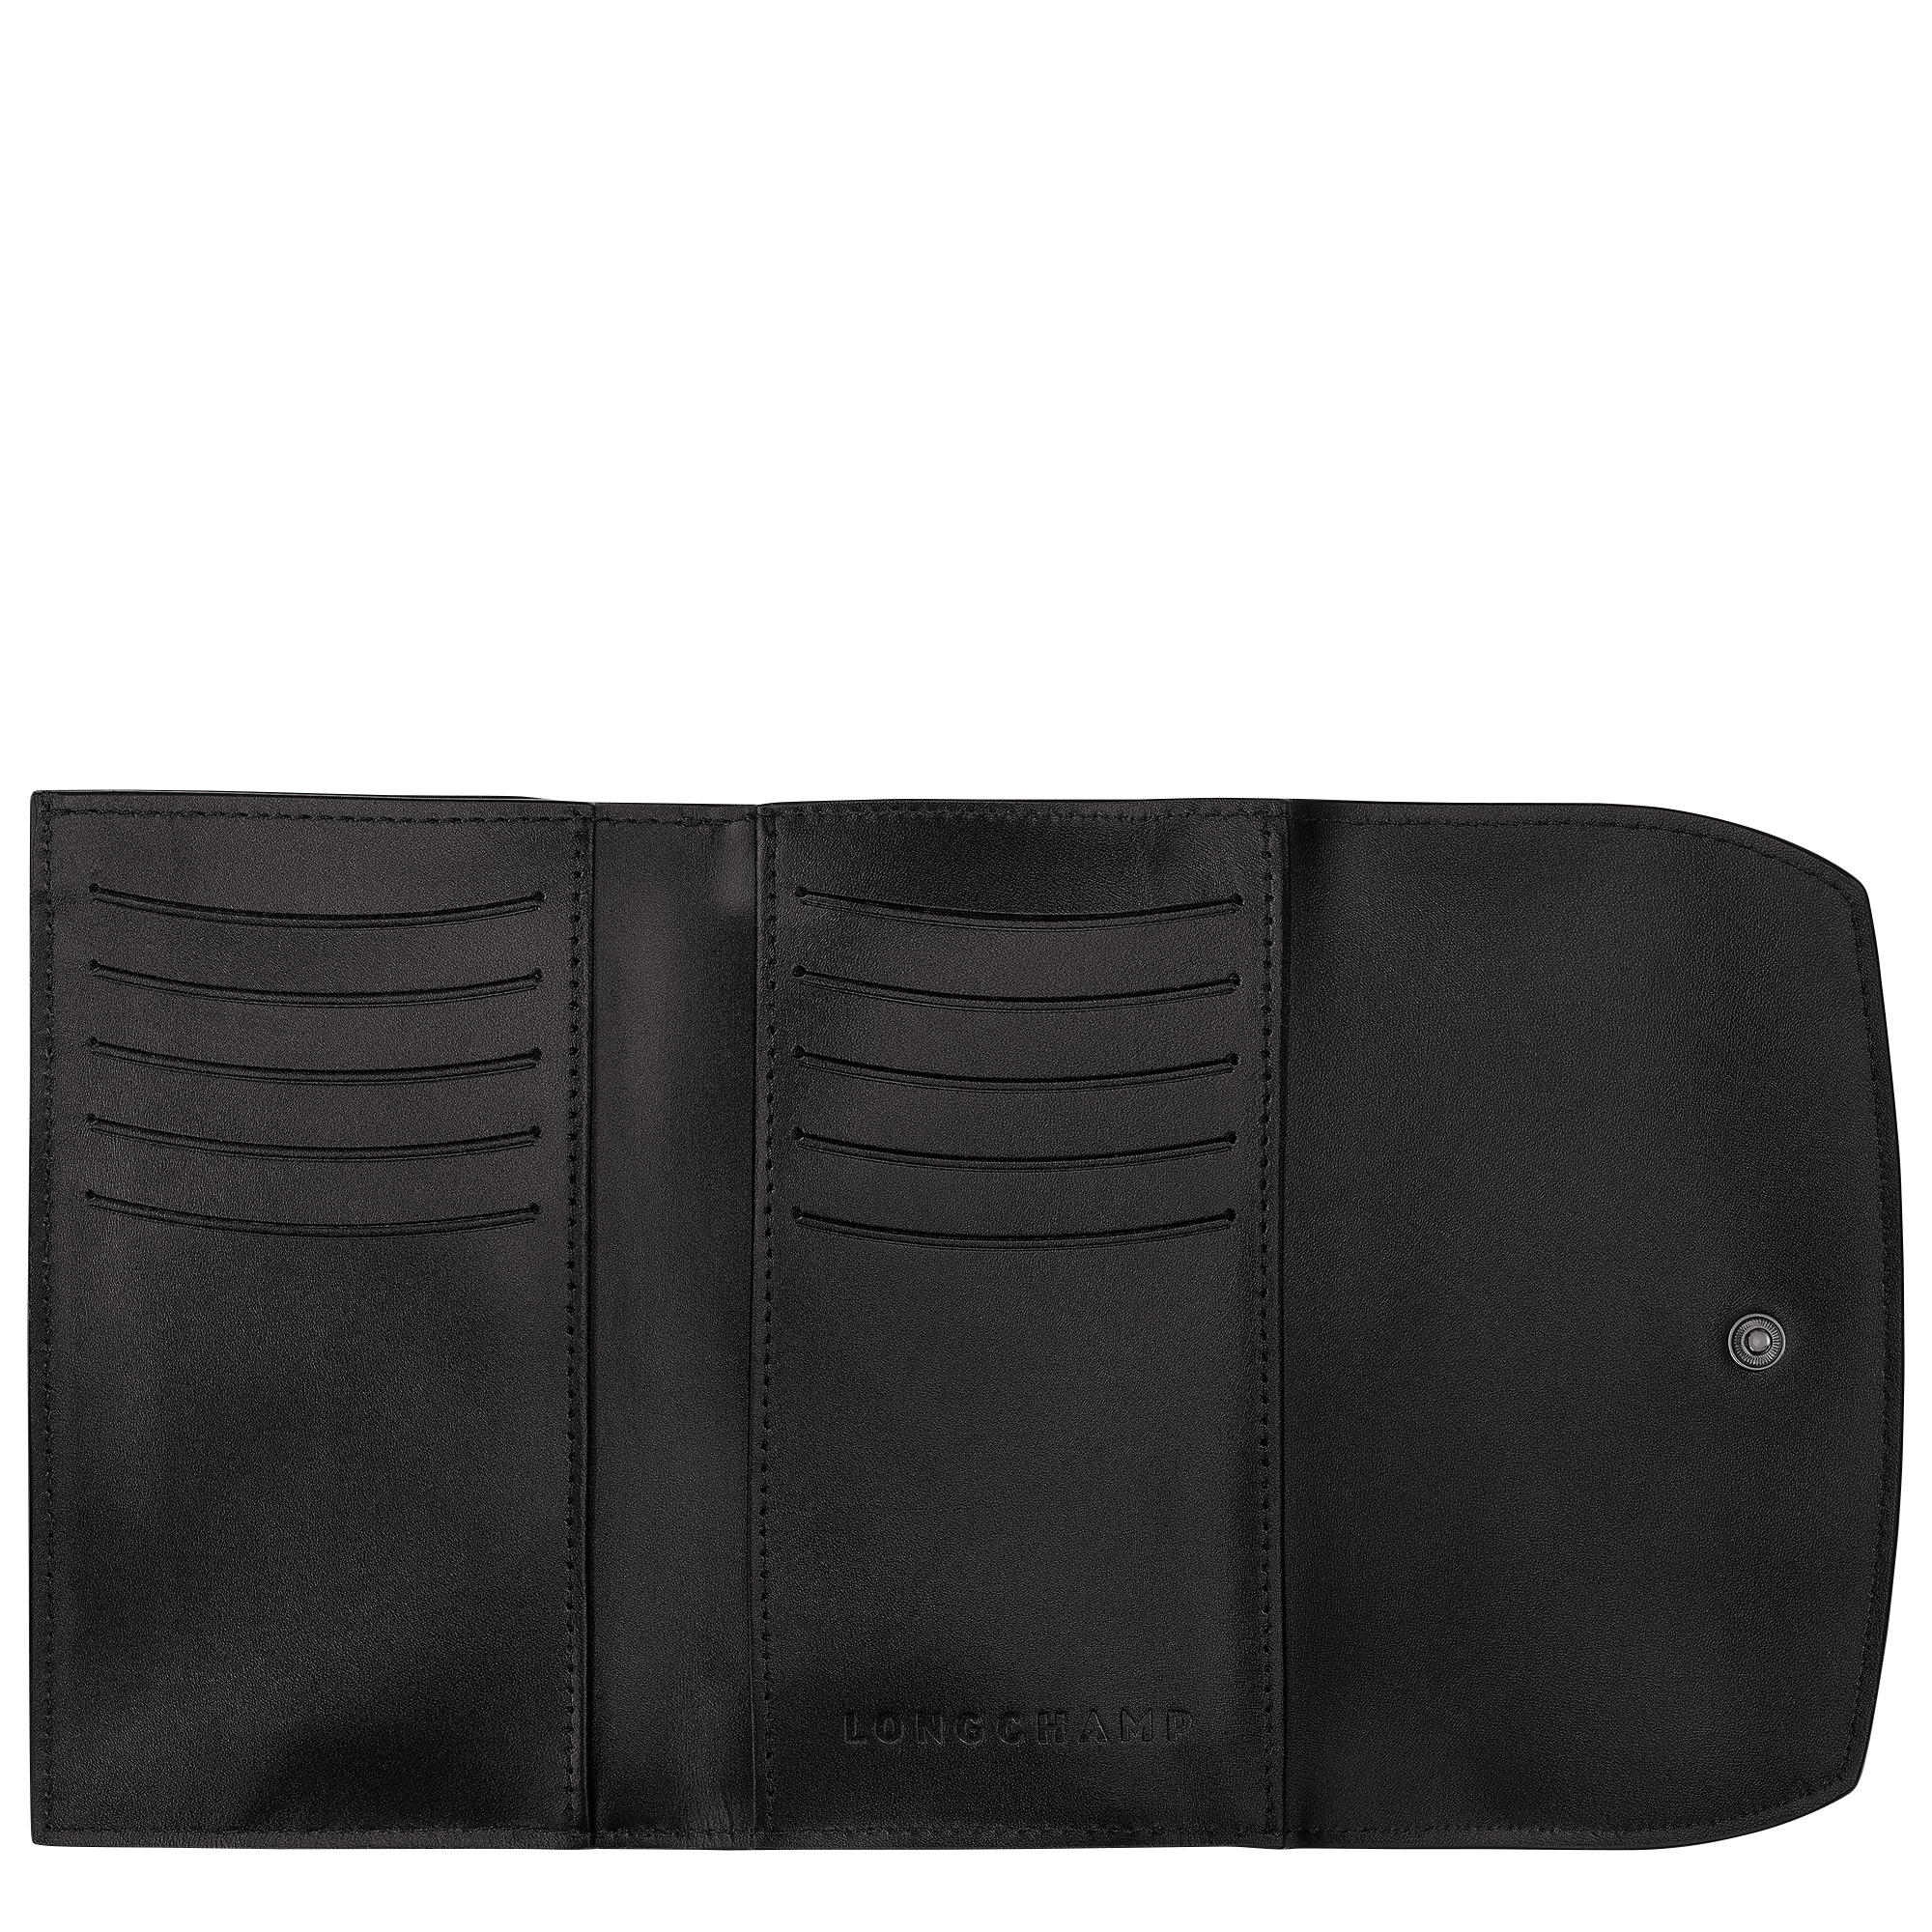 Roseau Wallet Black - Leather - 2